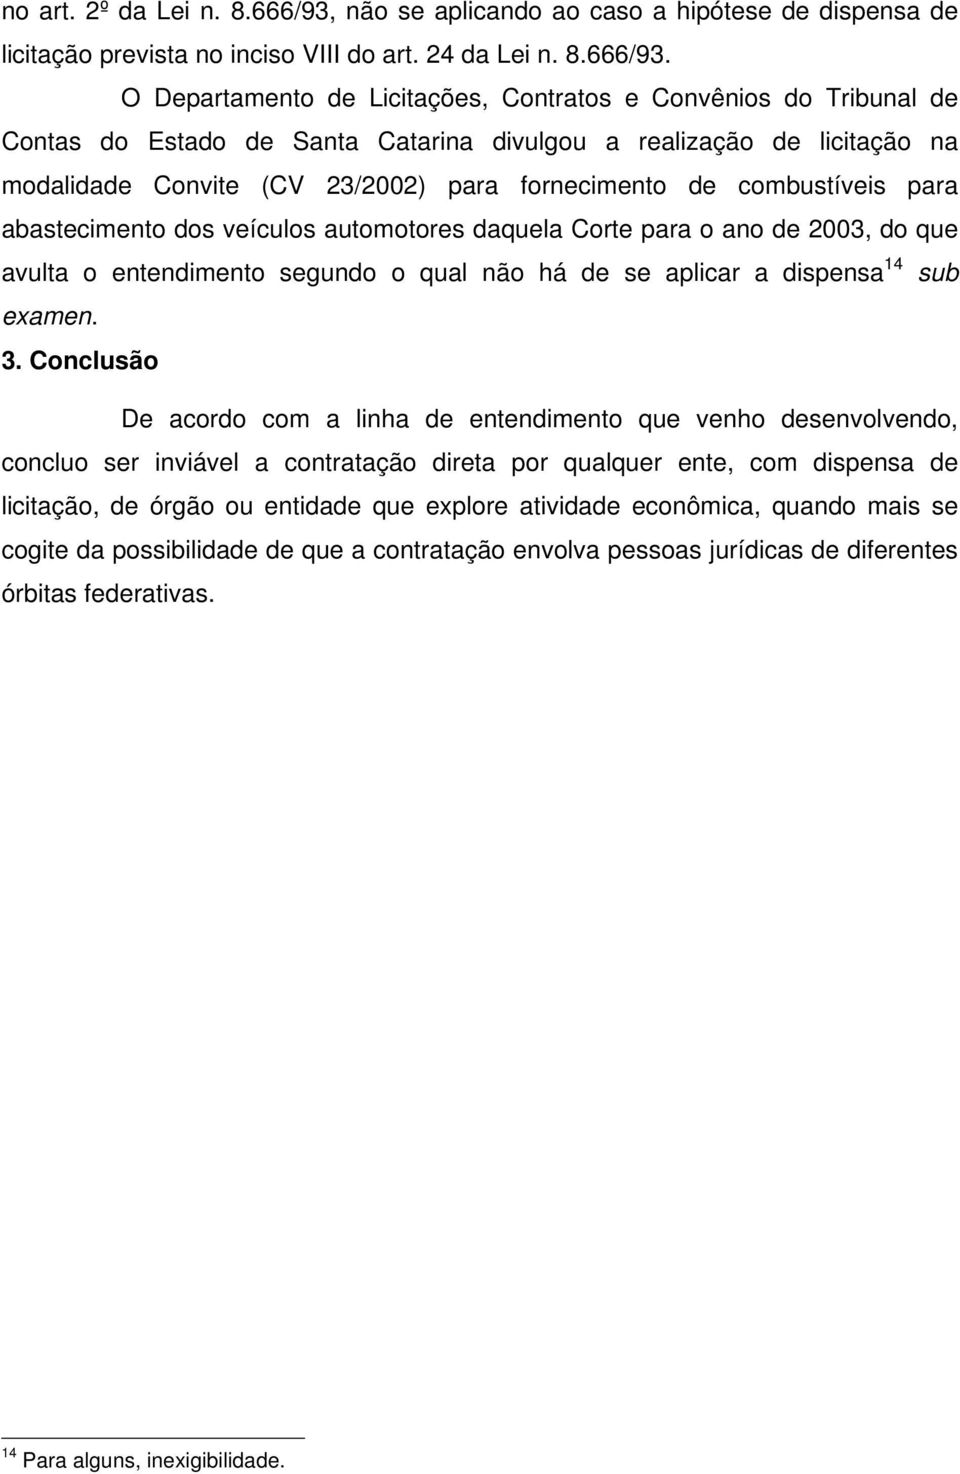 O Departamento de Licitações, Contratos e Convênios do Tribunal de Contas do Estado de Santa Catarina divulgou a realização de licitação na modalidade Convite (CV 23/2002) para fornecimento de